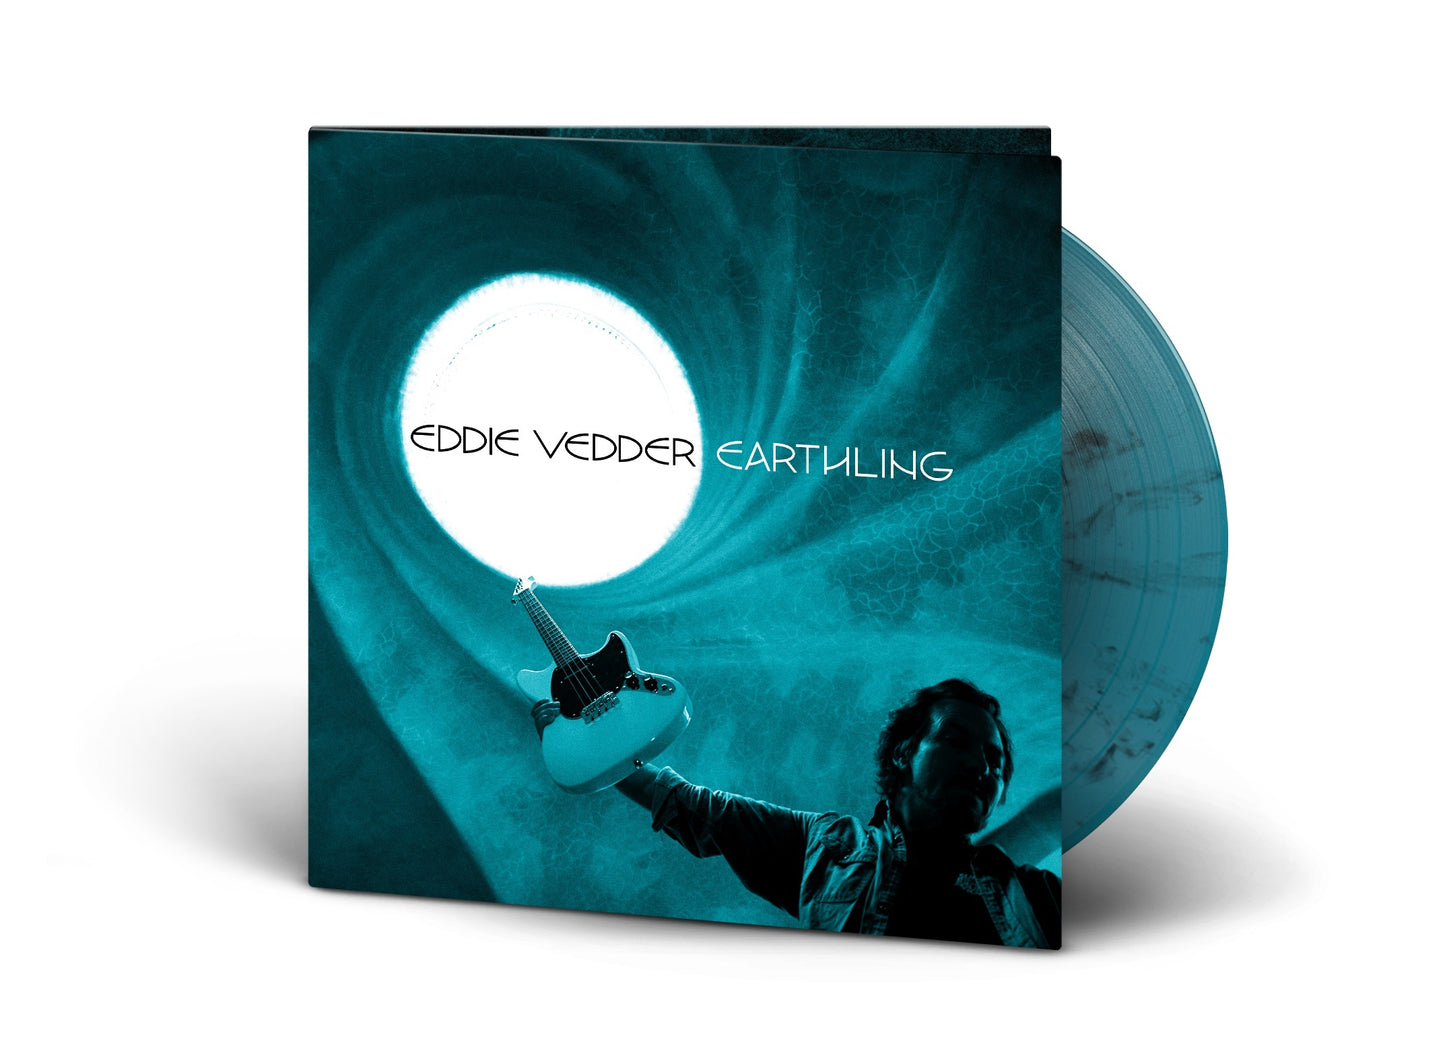 Eddie Vedder - Earthling [Explicit Content] Clear Vinyl, Blue, Black, Gatefold LP Jacket)